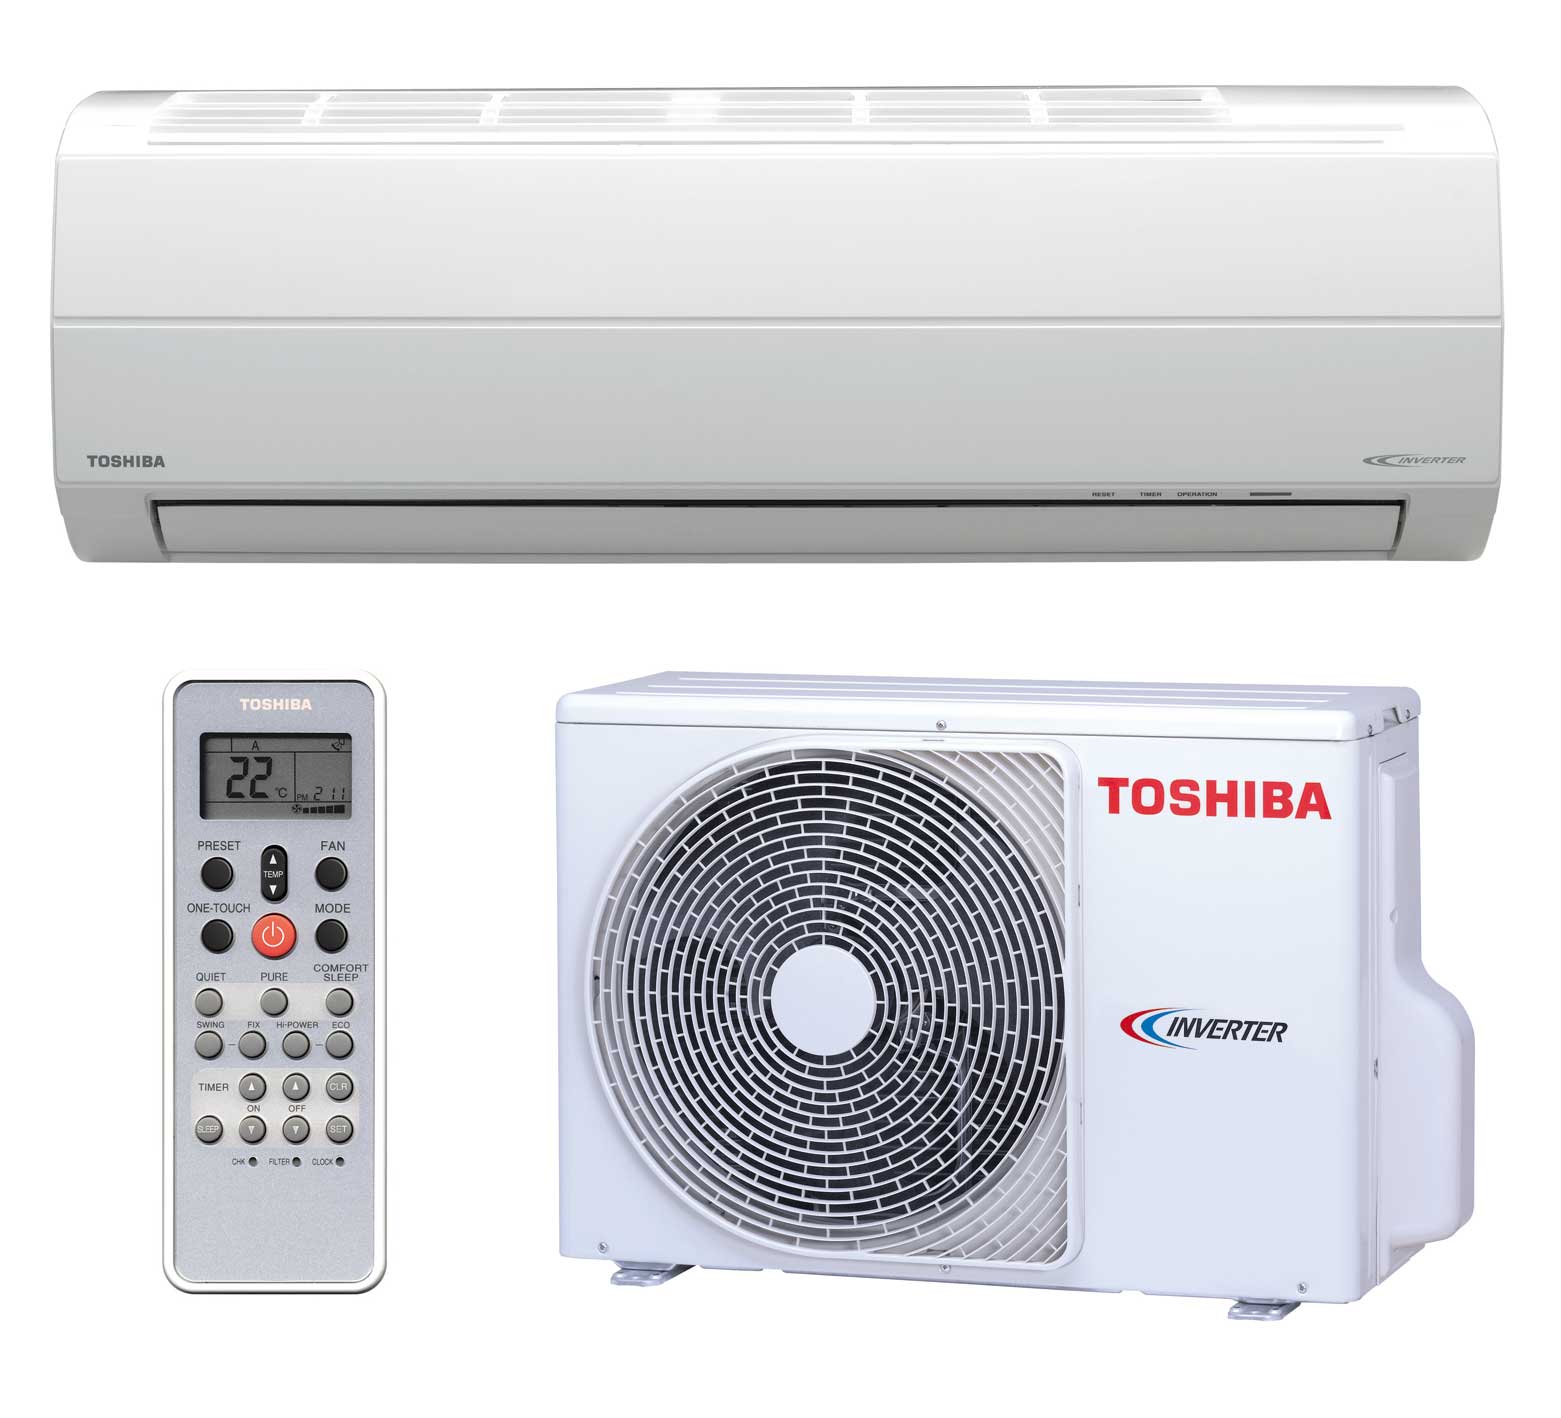 Toshiba được đánh giá là dòng máy có độ bền bỉ cao